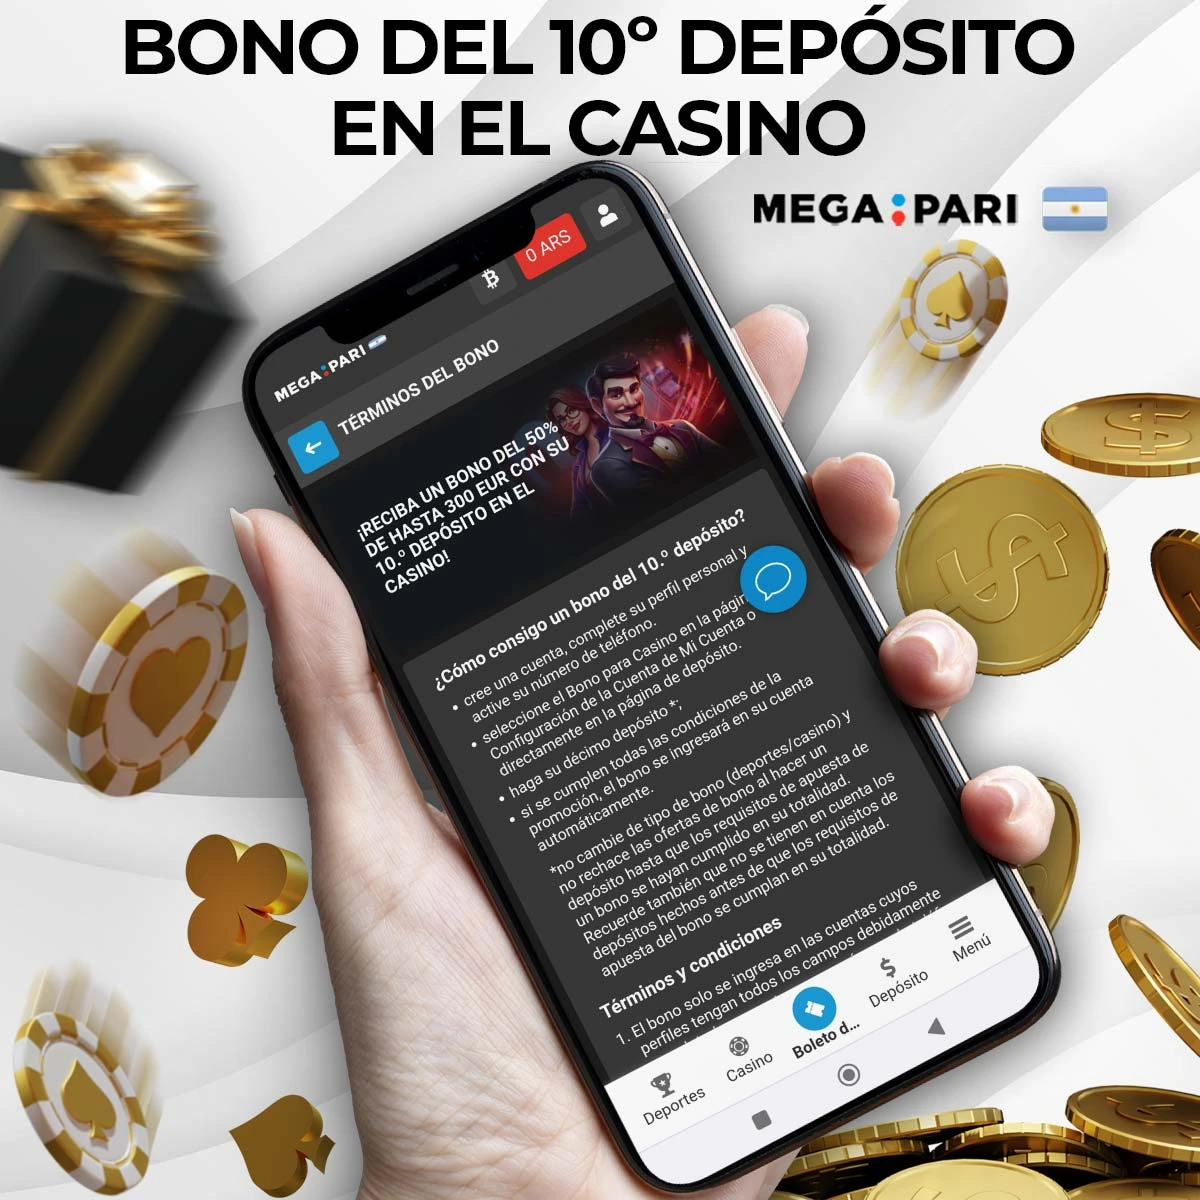 Reseña del bono de 10º depósito de Megapari Argentina Casino